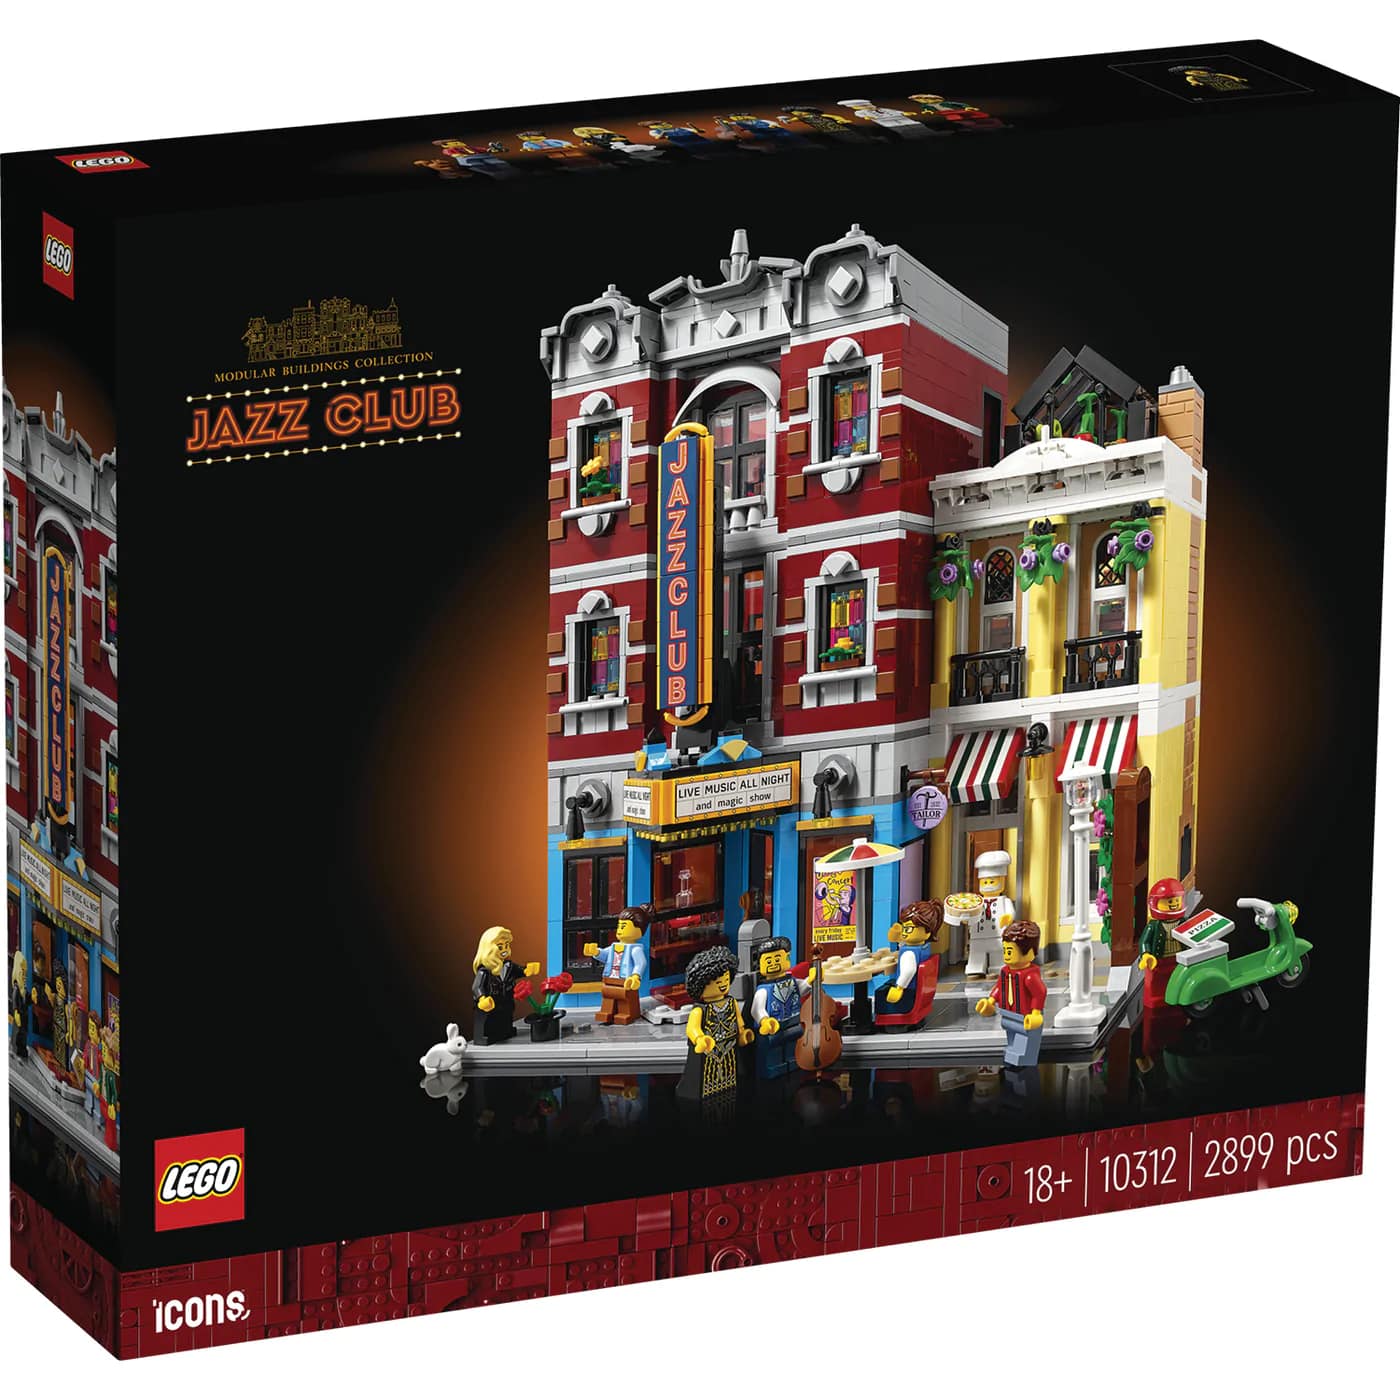 LEGO - 10312 - câu lạc bộ nhạc Jazz 10312 (2899 chi tiết)